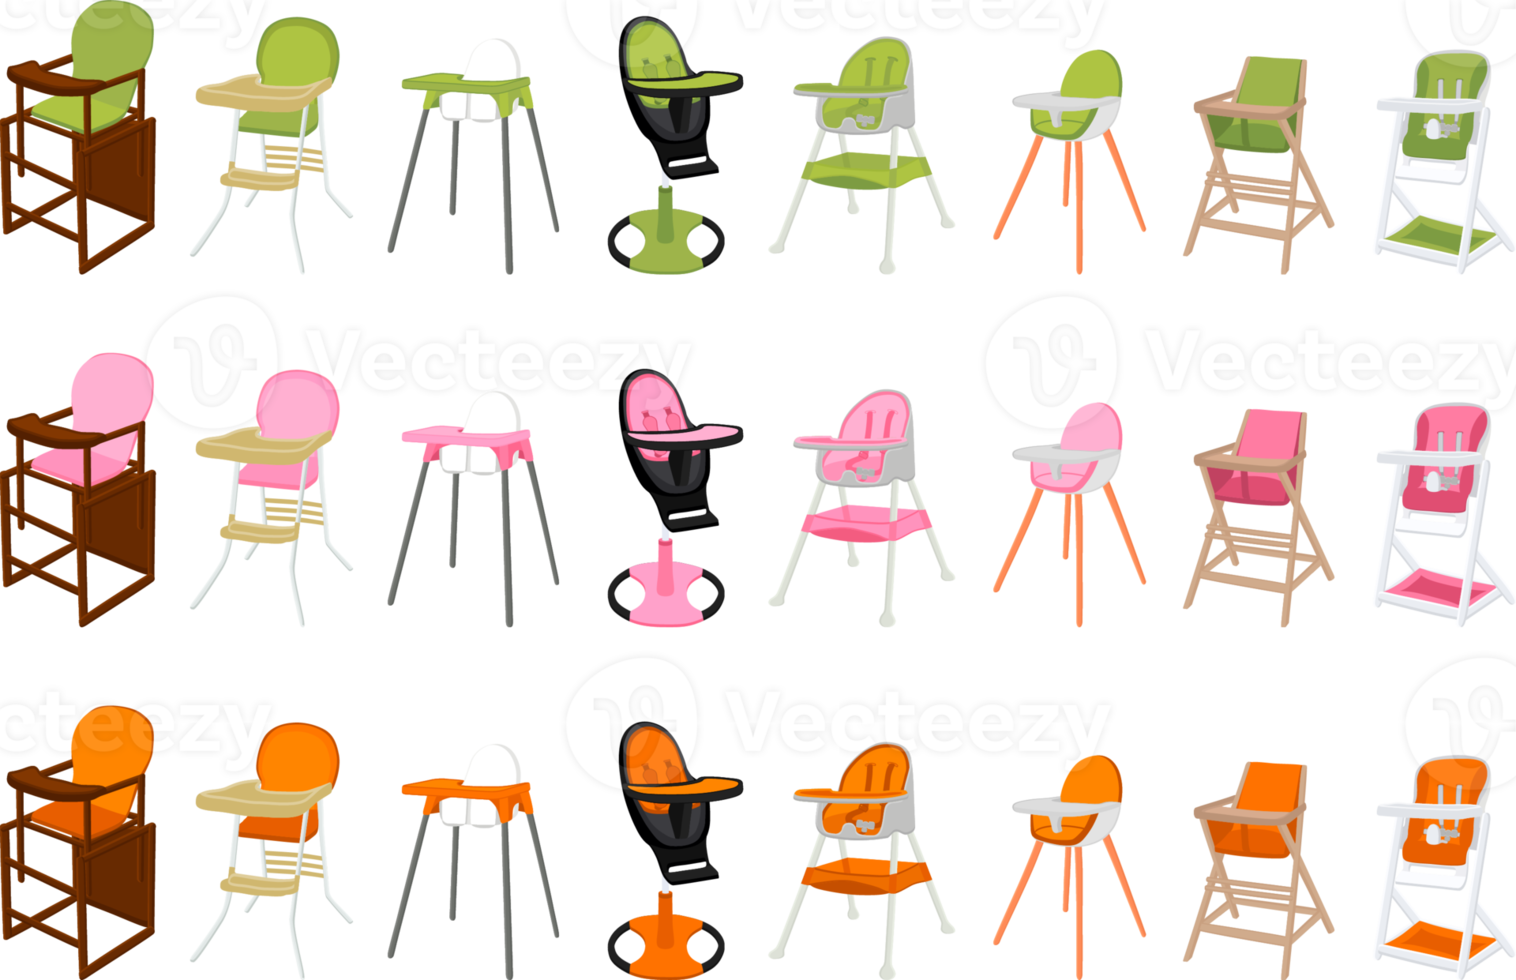 färgrik modern barn hög stol för bebis matning png